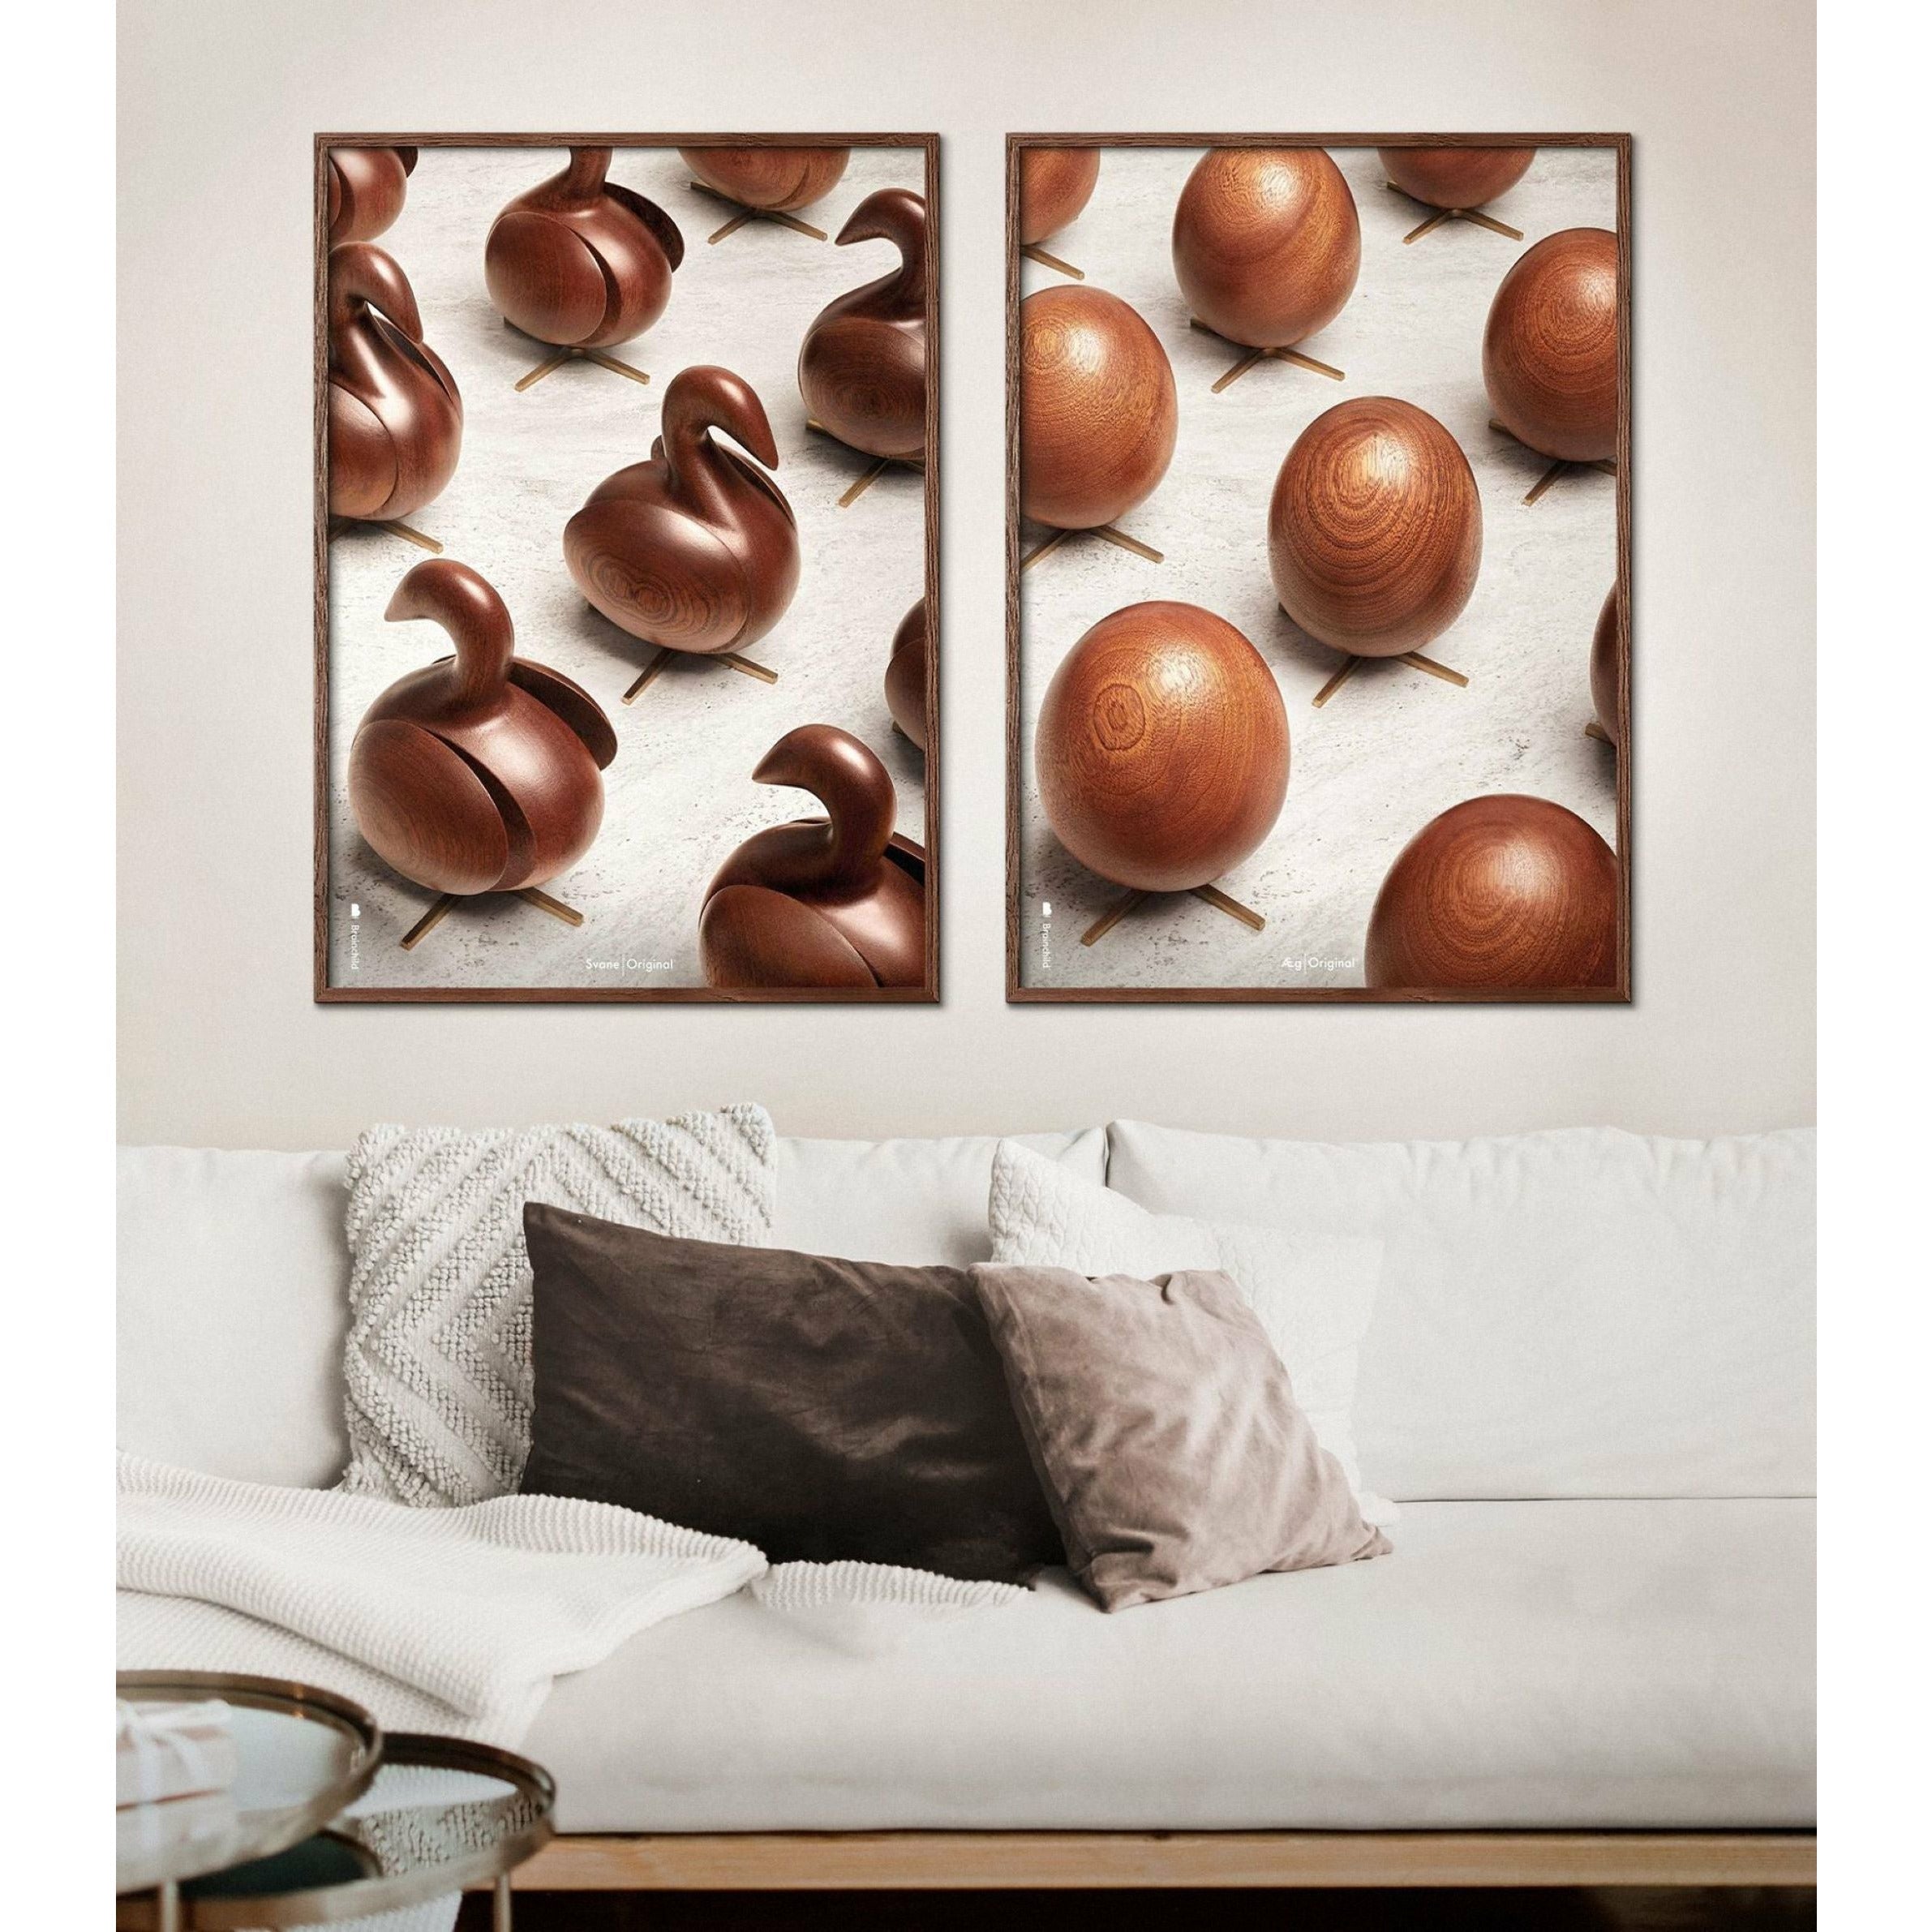 Póster de desfile de huevos de creación, marco hecho de madera oscura, 70 x100 cm